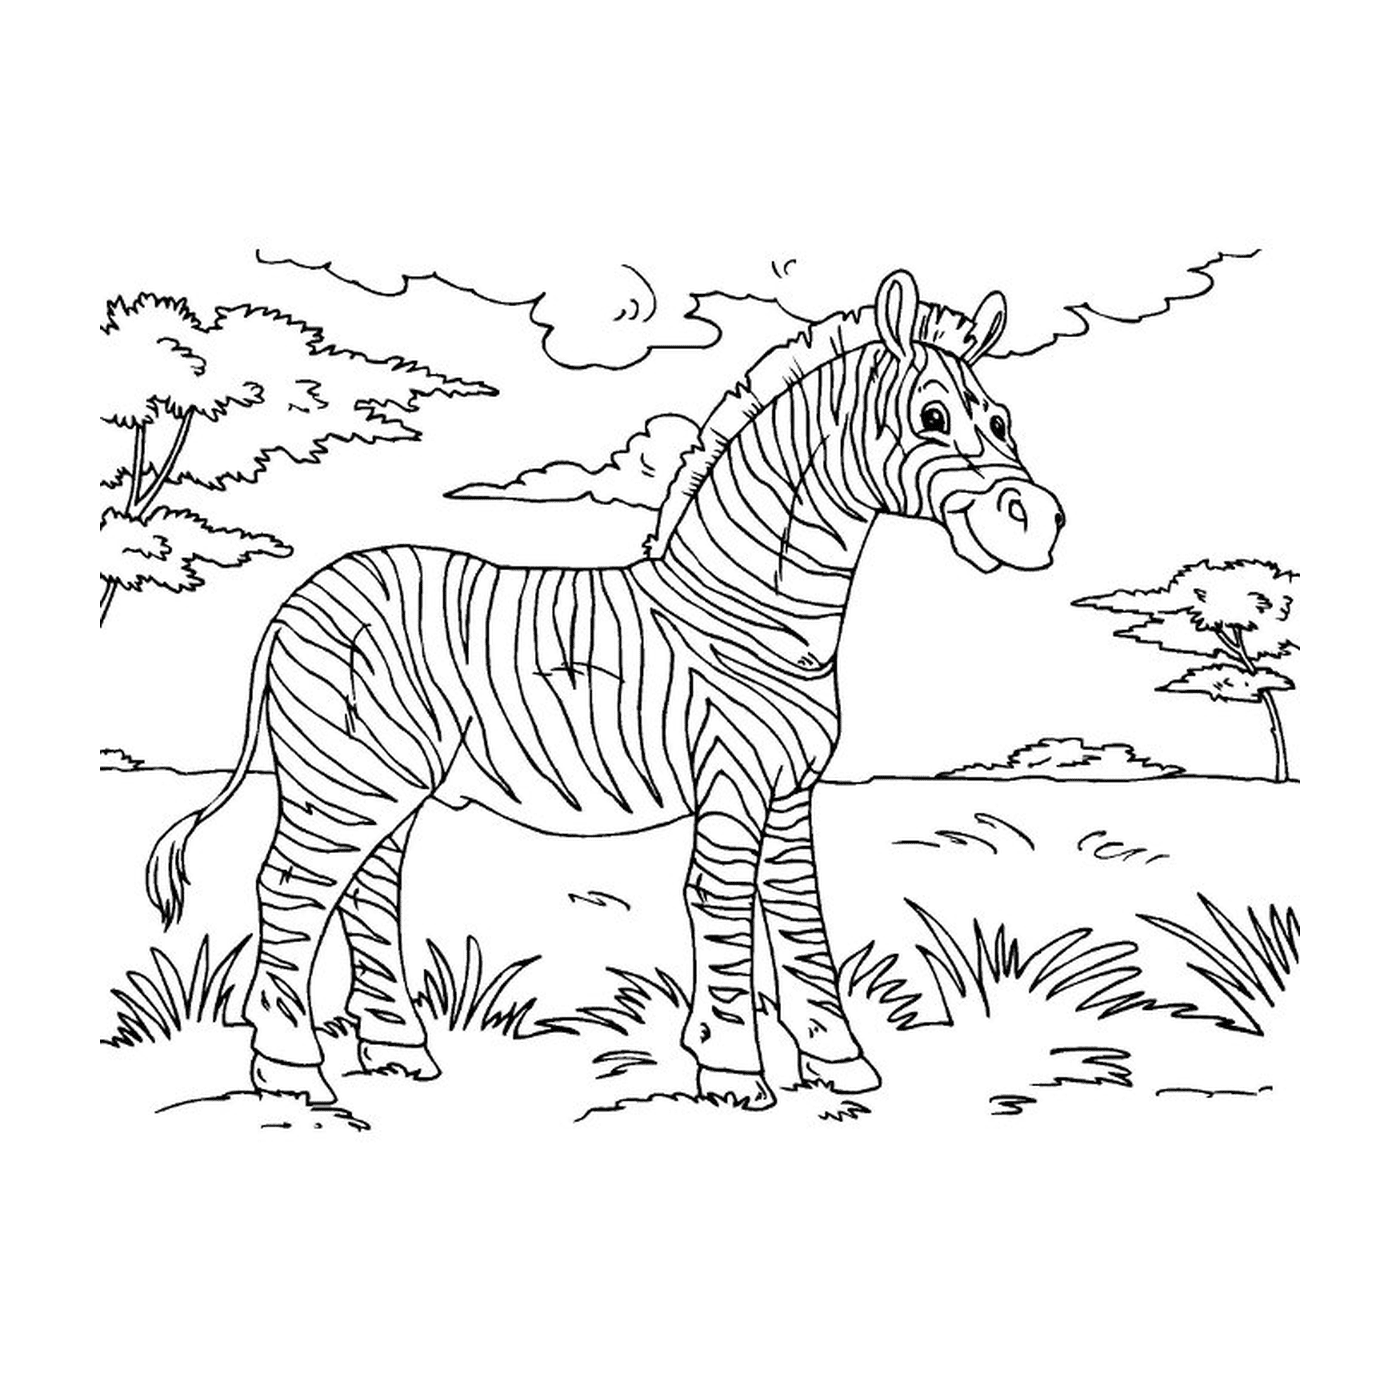  Friedliches Zebra in der Natur 